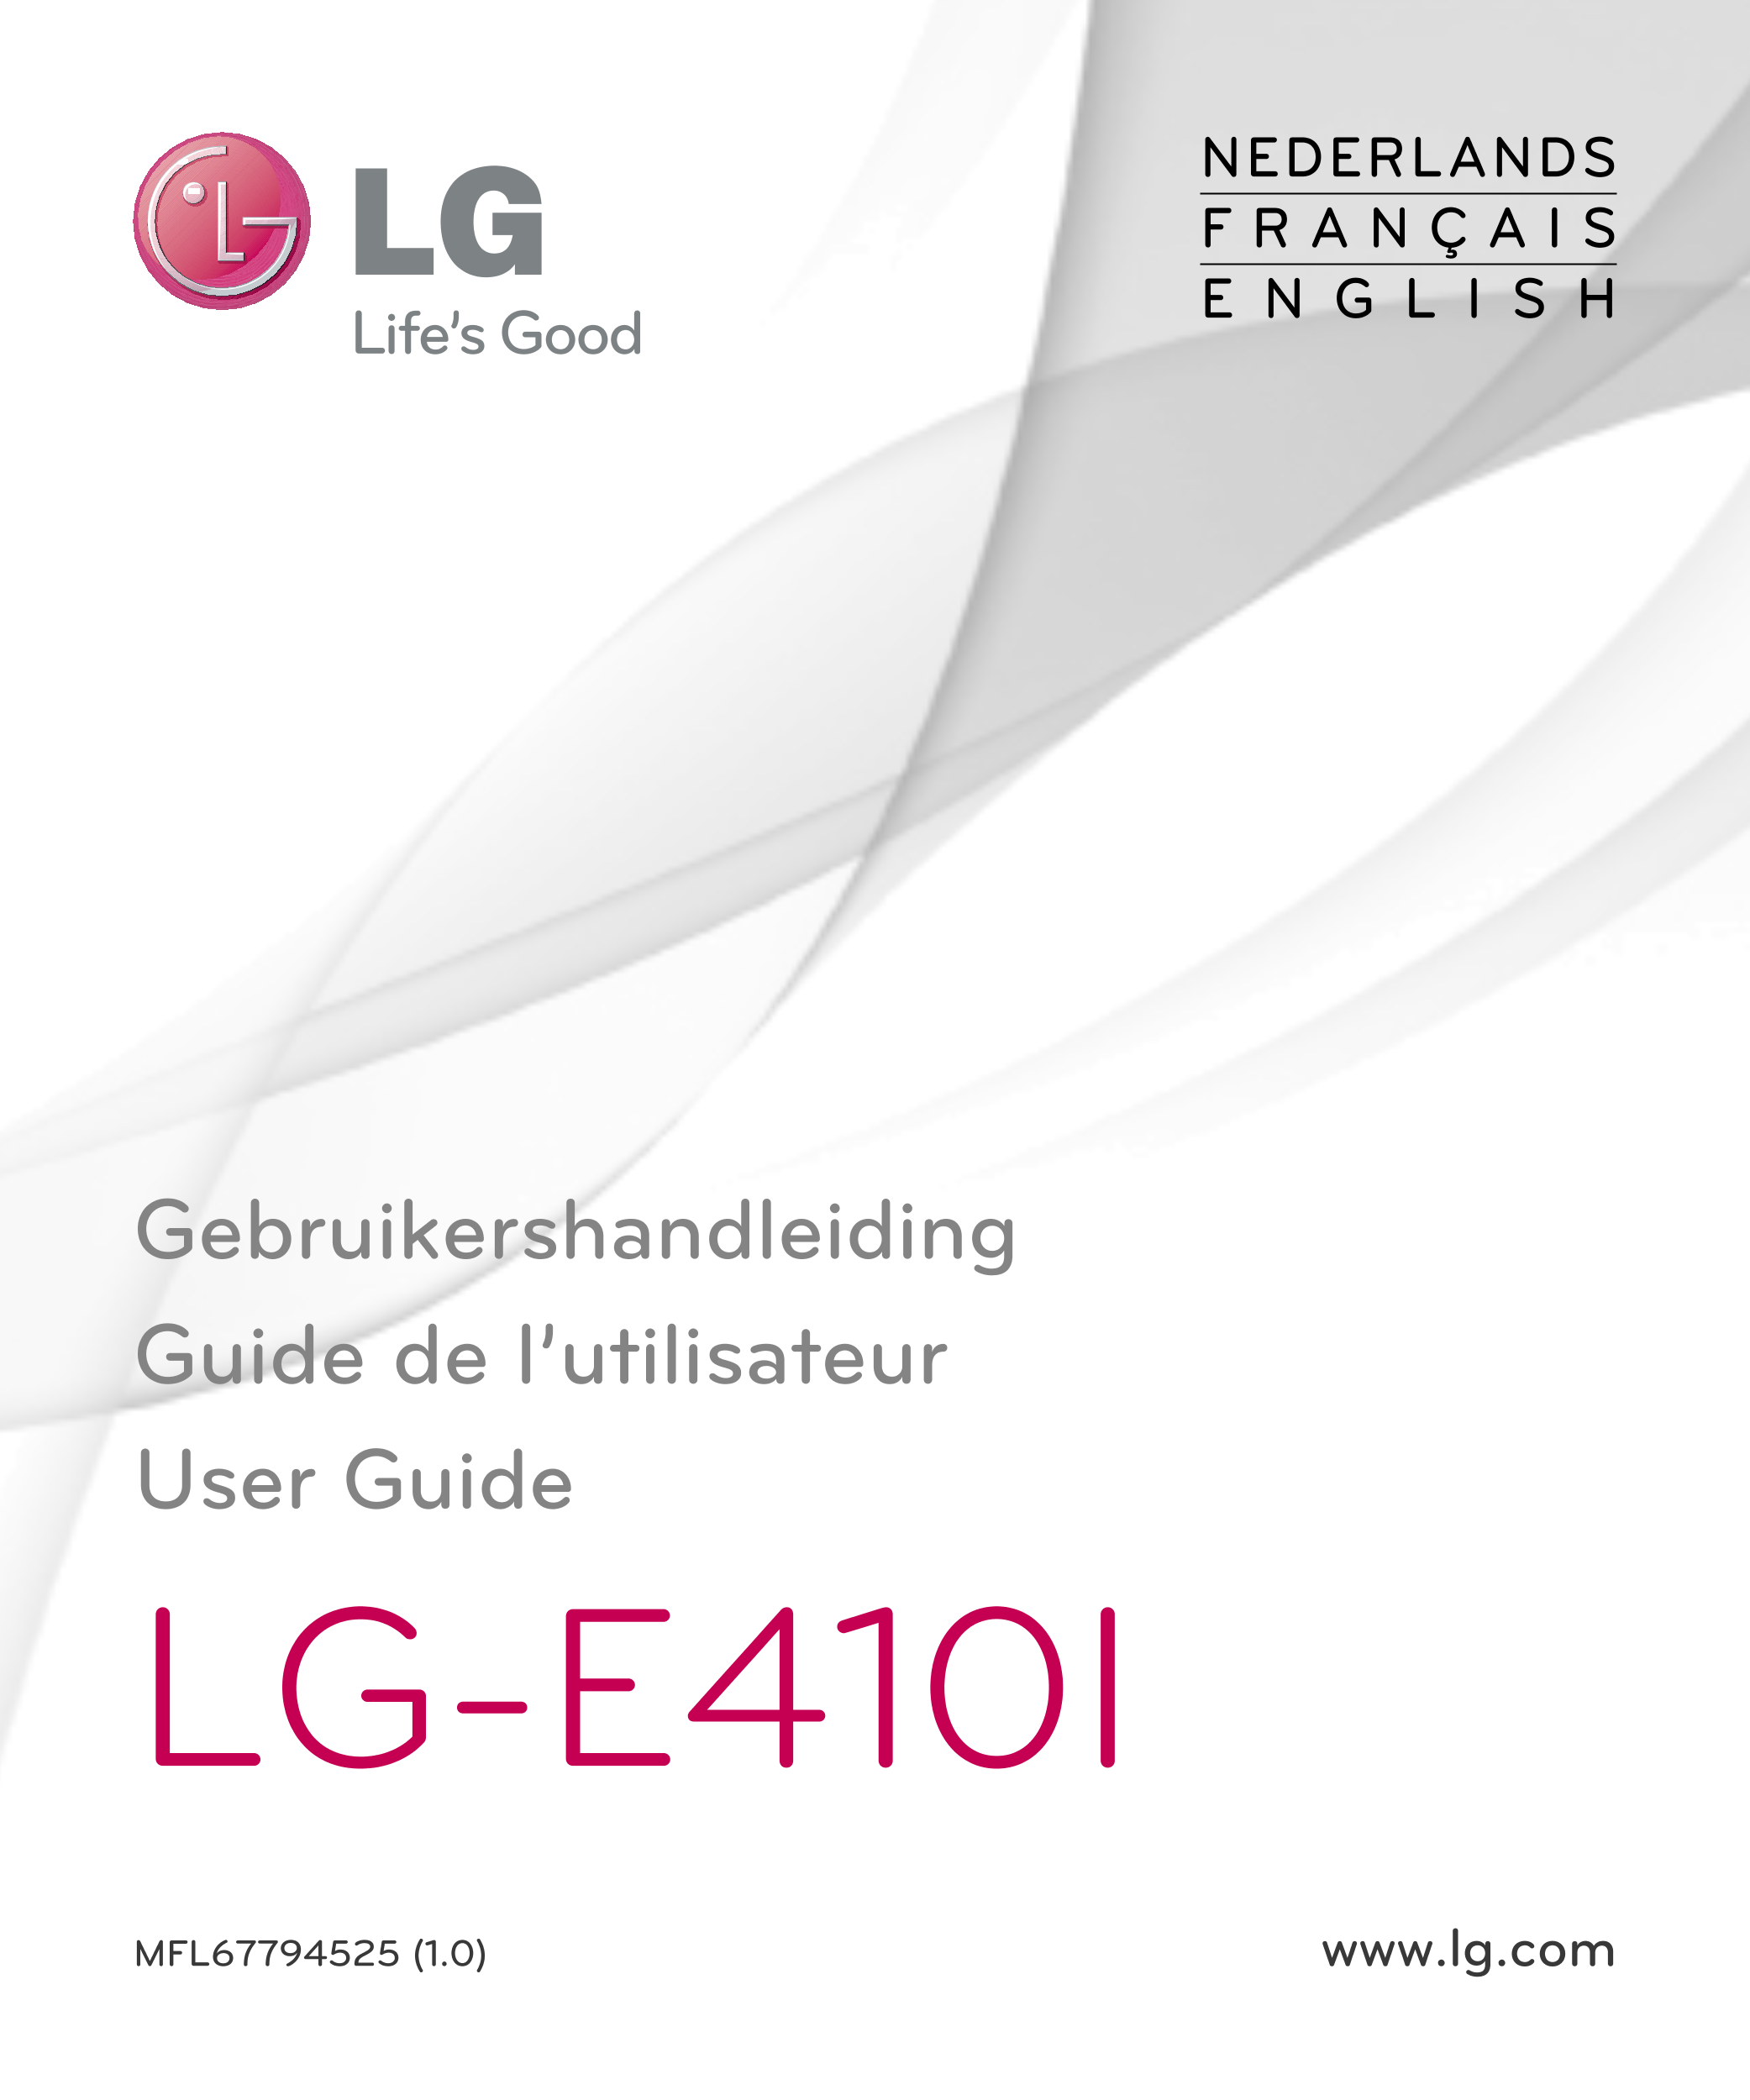 NEDERLANDS
F R A N Ç A I S
E N G L I S H
Gebruikershandleiding
Guide de l’utilisateur
User Guide
LG-E410I
MFL67794525 (1.0) www.